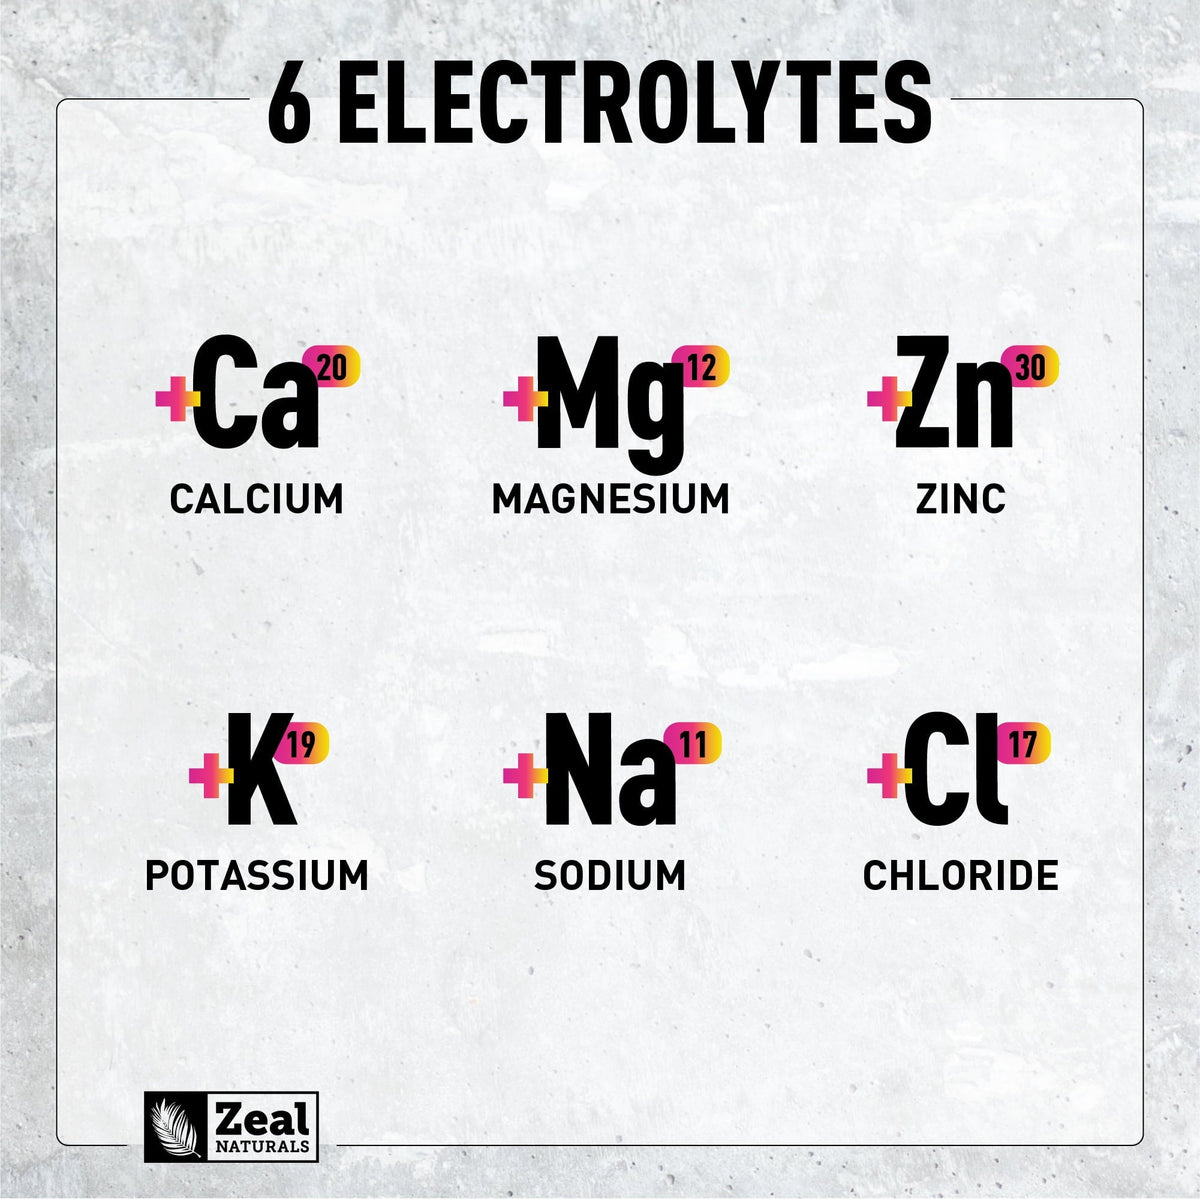 Product contains 6 electrolytes: Calcium, Magnesium, Zinc, Potassium, Sodium, and Chloride.